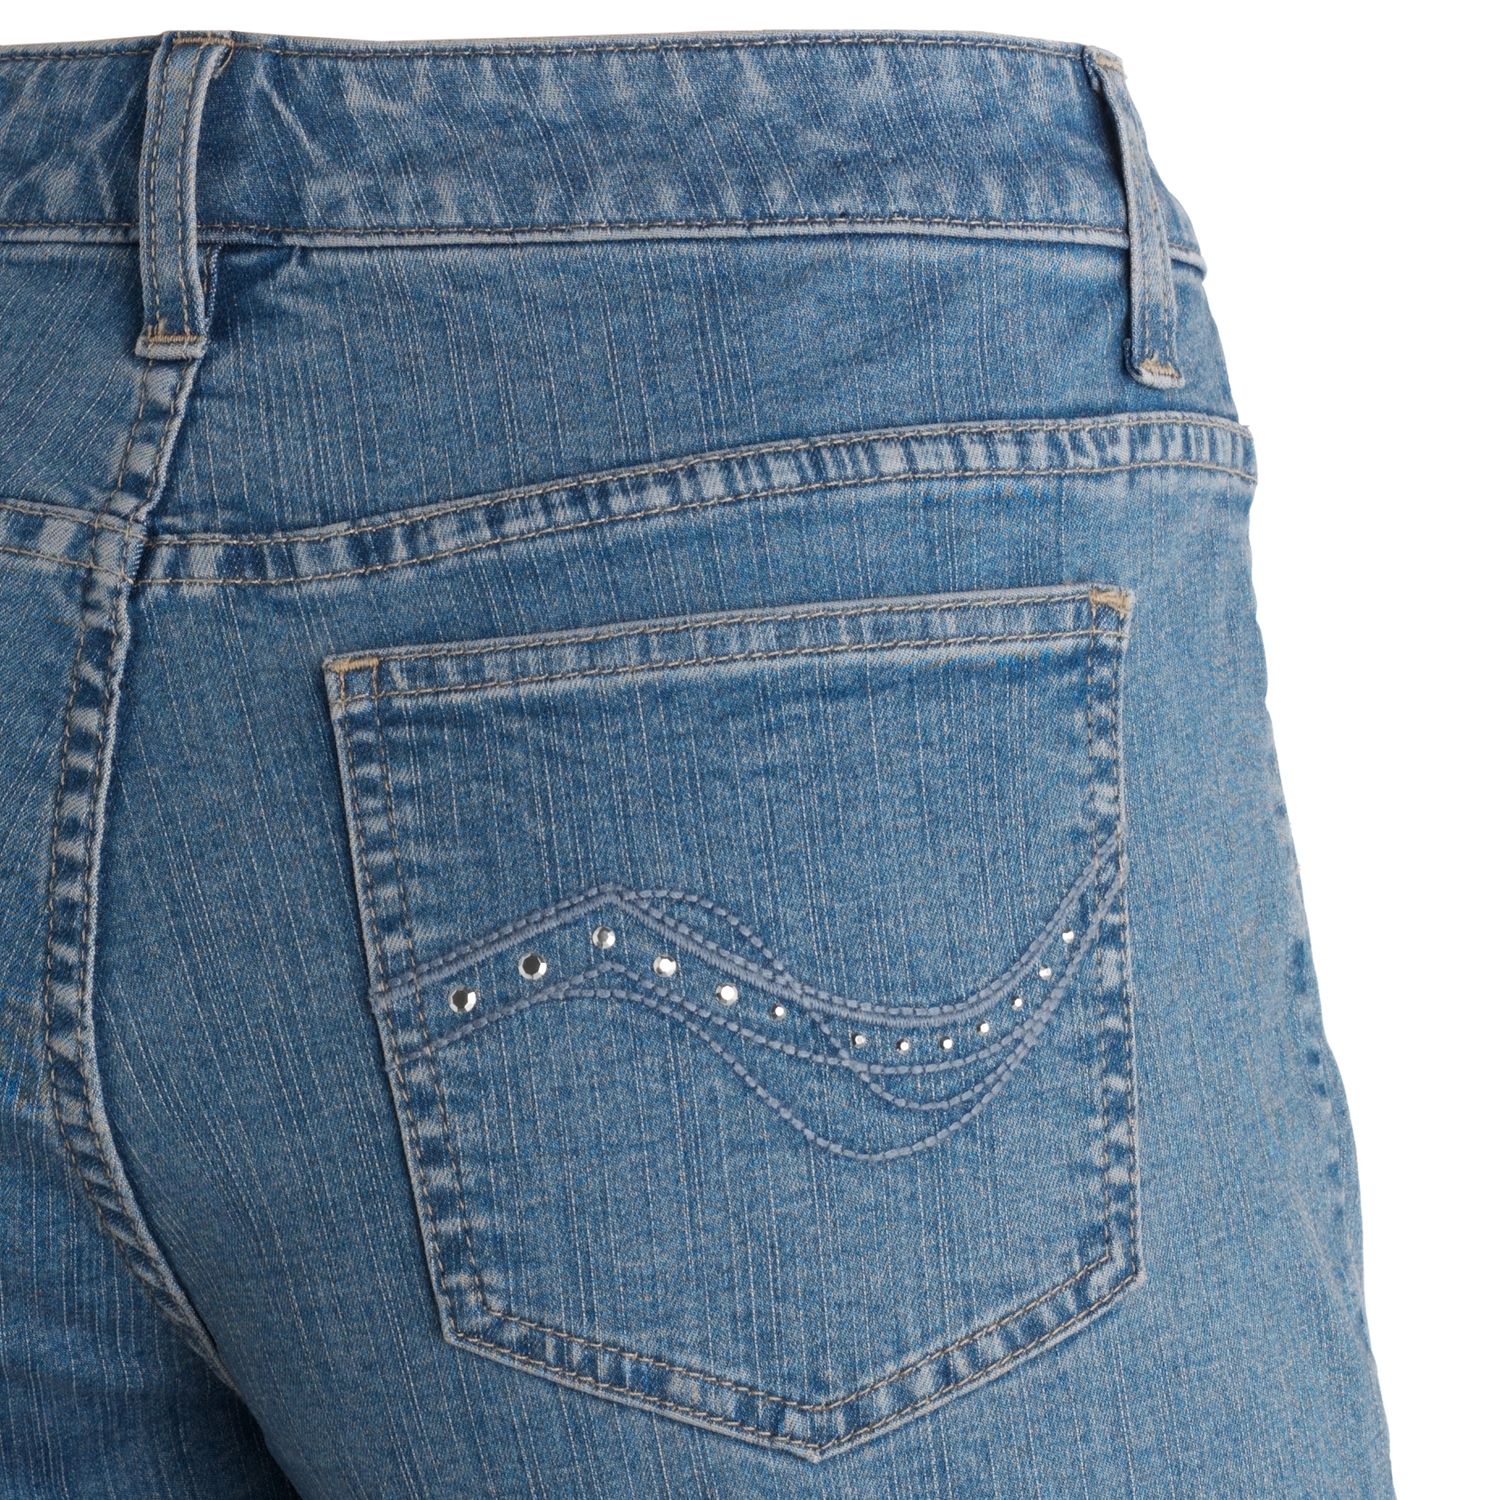 lee slender secret jeans at kohl's